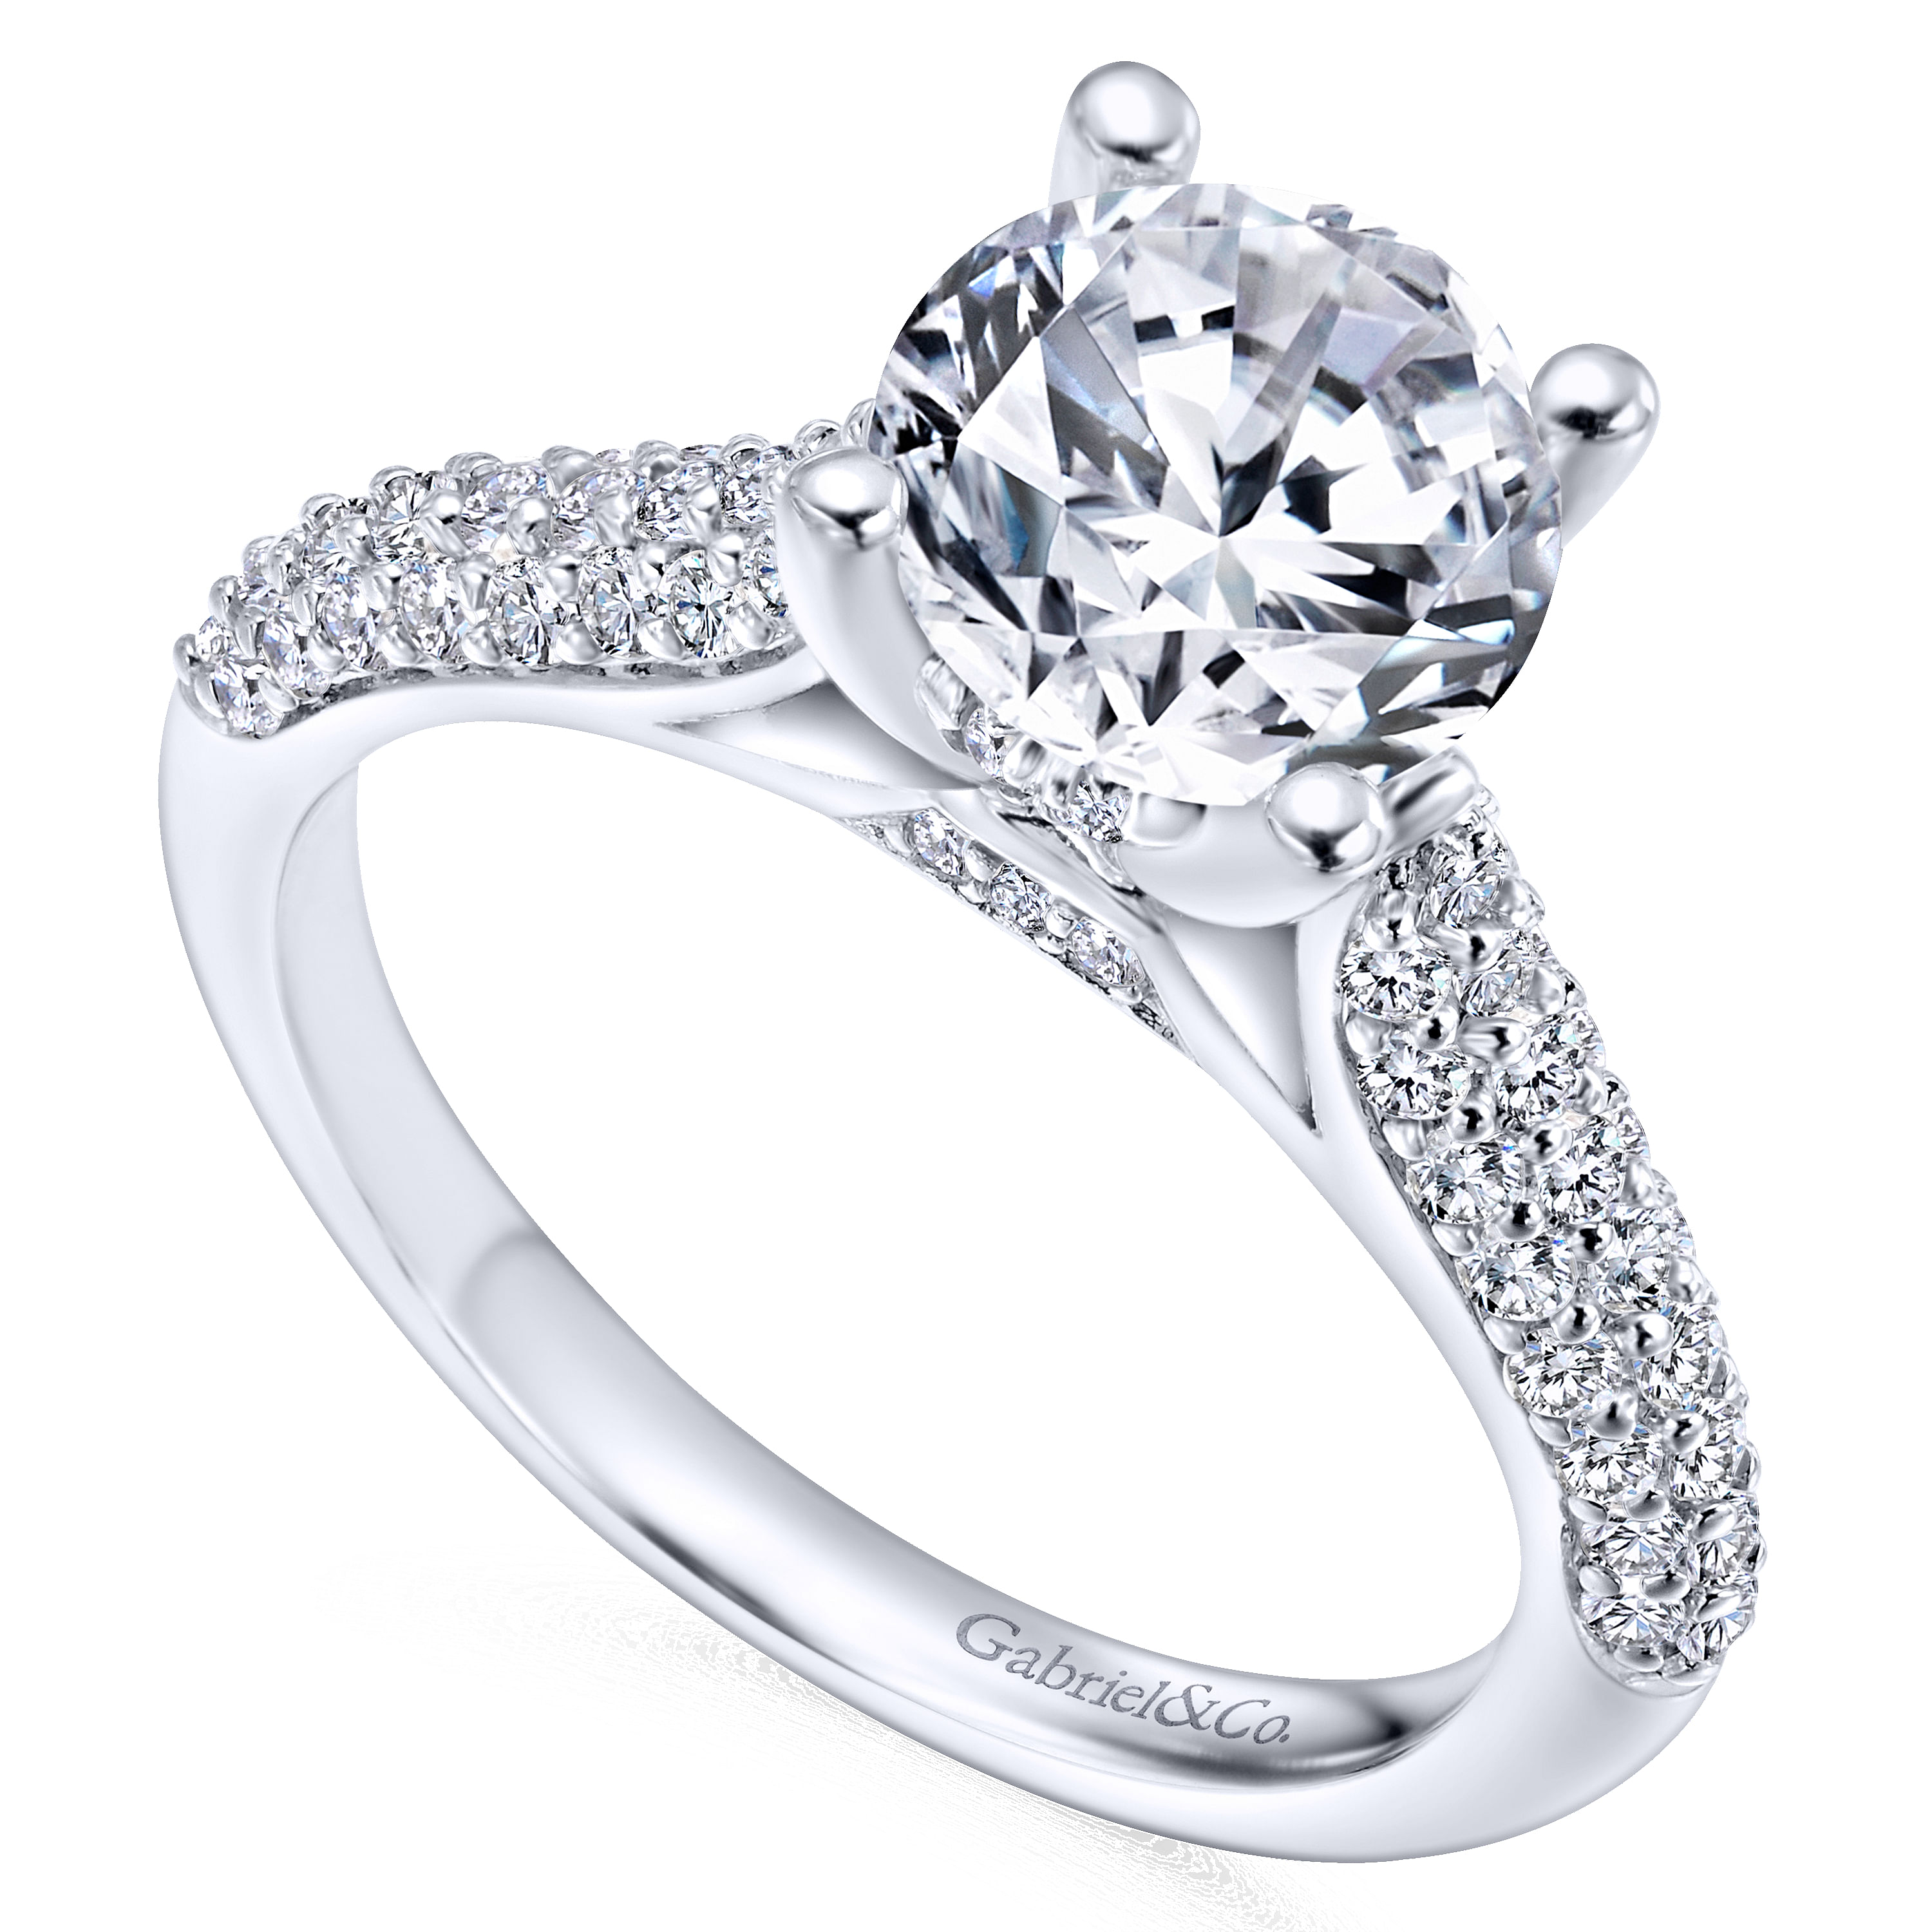 Tina - 14K White Gold Round Diamond Engagement Ring - 0.55 ct - Shot 3